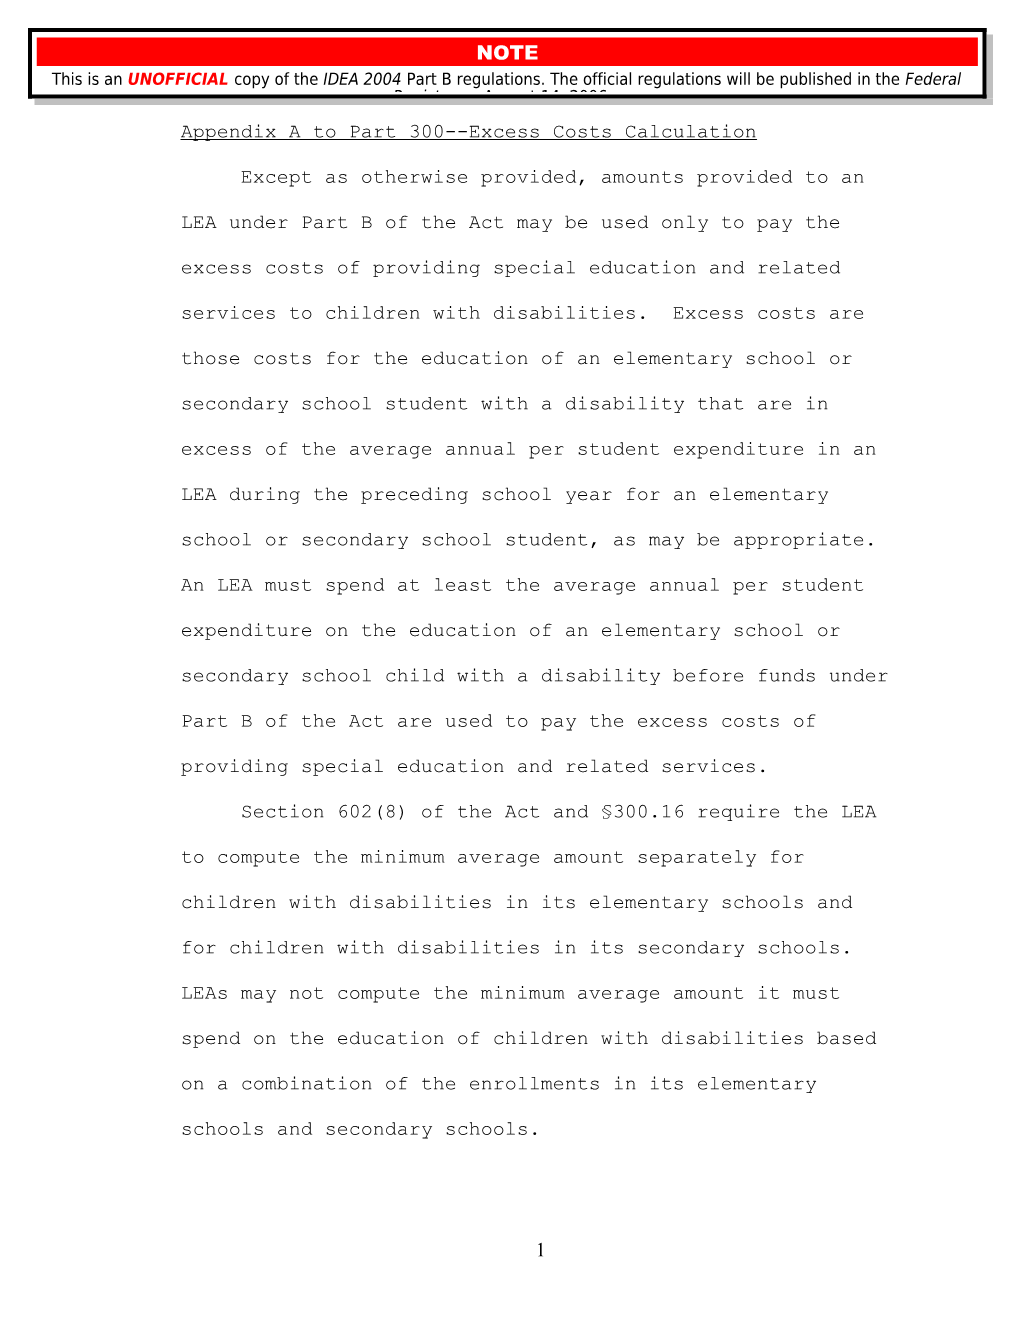 IDEA 2004 Part B Regulations - Appendices (UNOFFICIAL COPY) (MS Word)